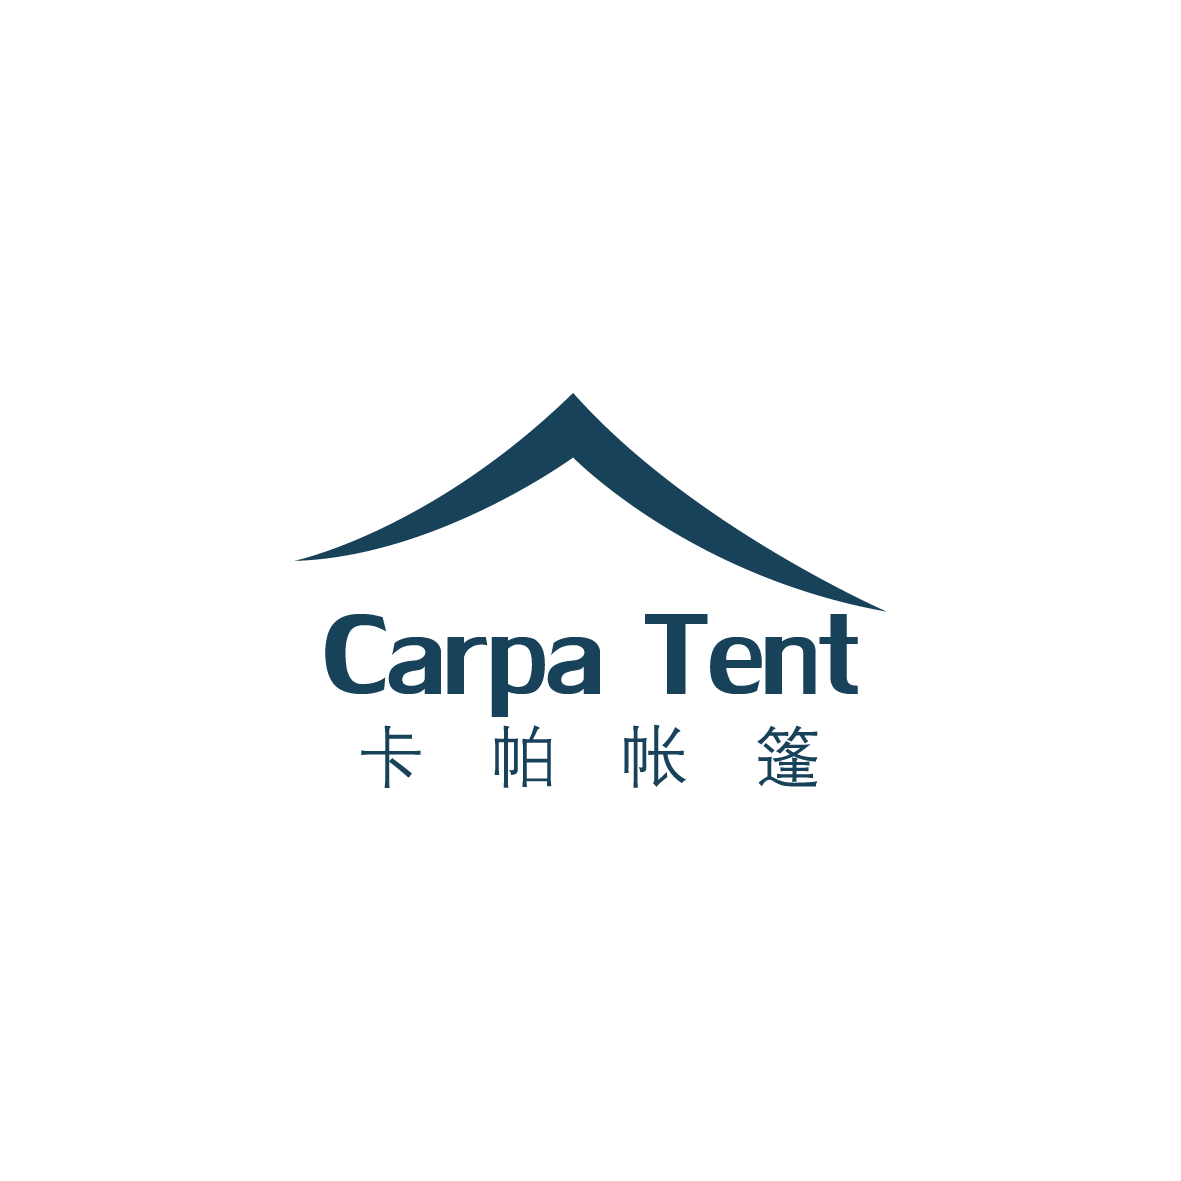 广州卡帕帐篷有限公司